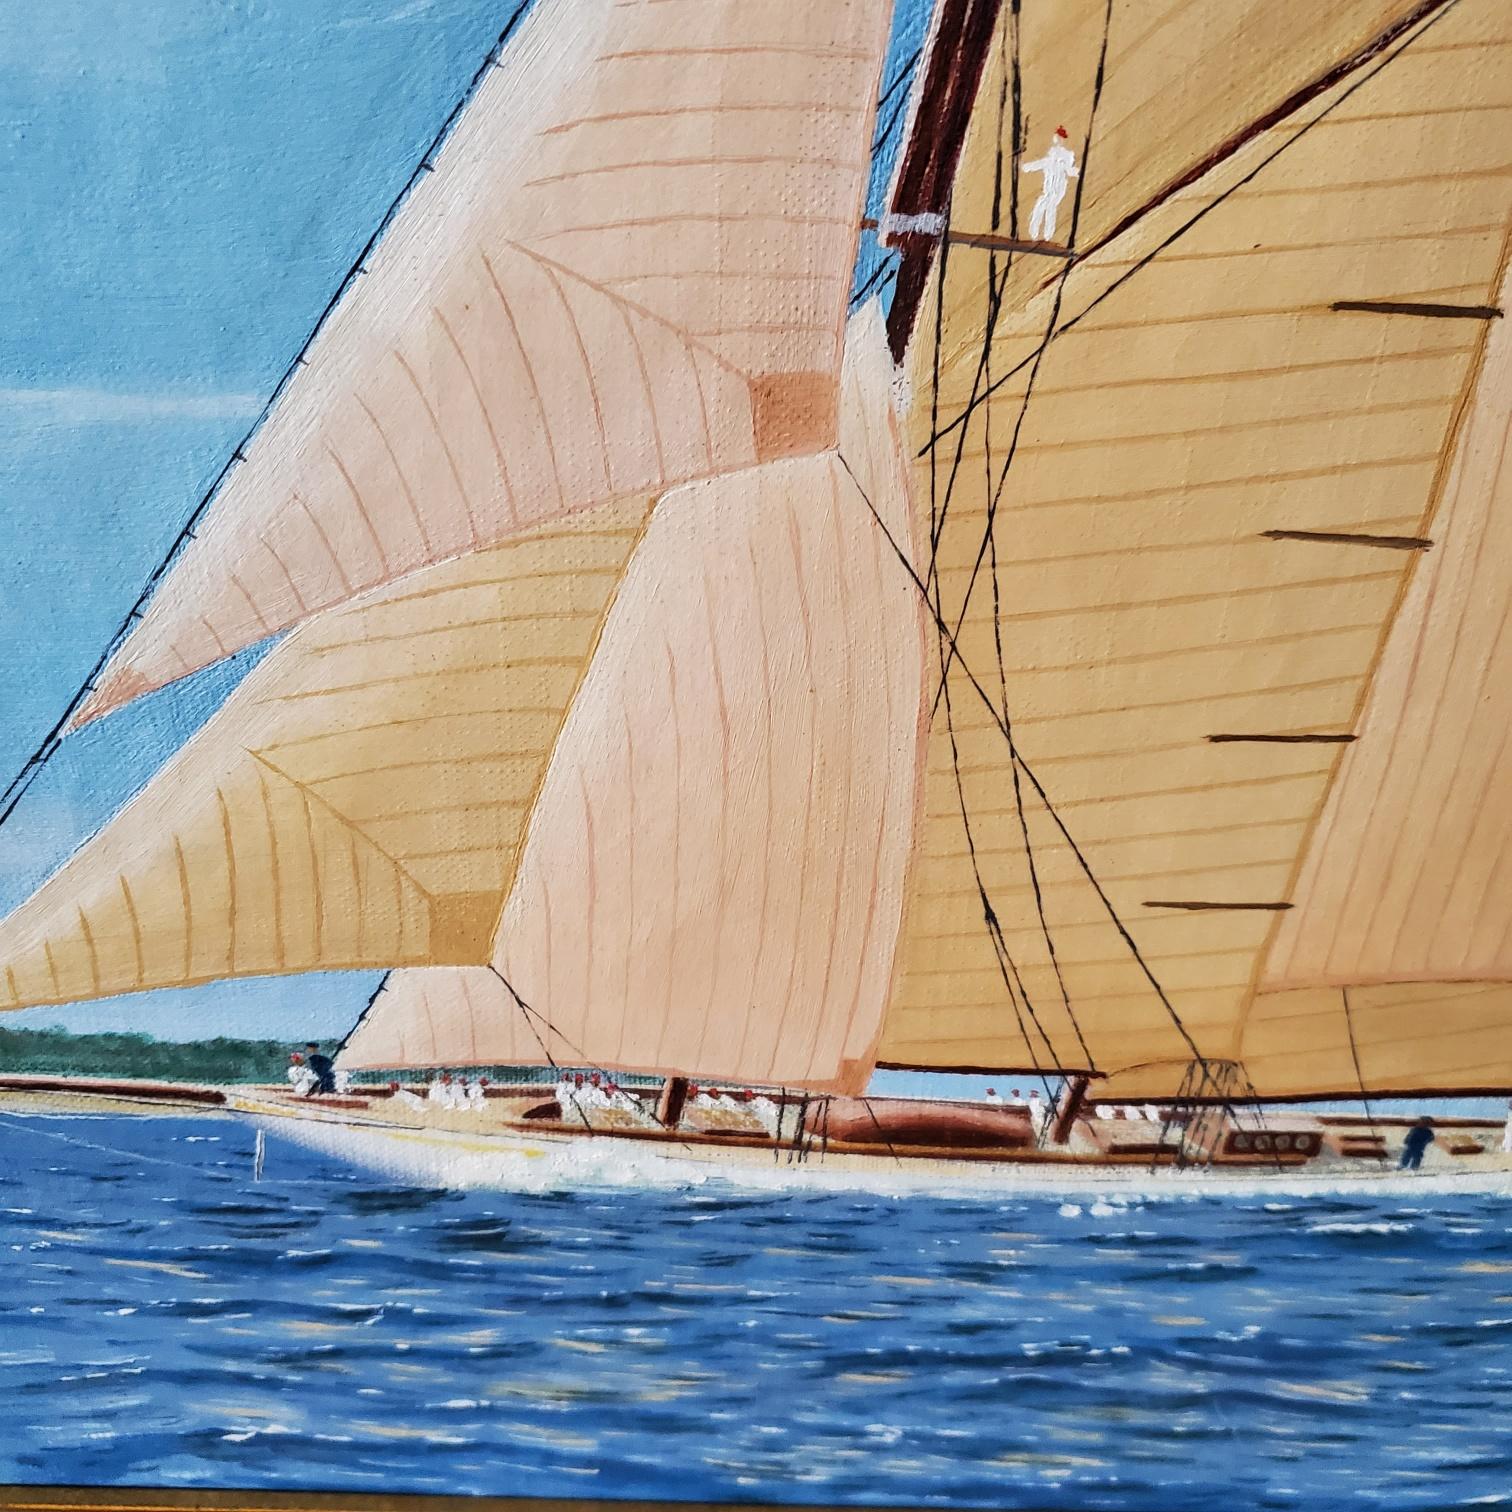 Frühe Vintage-Seelandschaft mit Porträt einer geschwungenen Yacht, signiert und datiert Carl Schroeder, 1937, ein ungefärbtes Ölgemälde auf Leinwand mit einer Hafenansicht einer großen geschwungenen Rennjacht mit allen Leinwänden auf der Leinwand